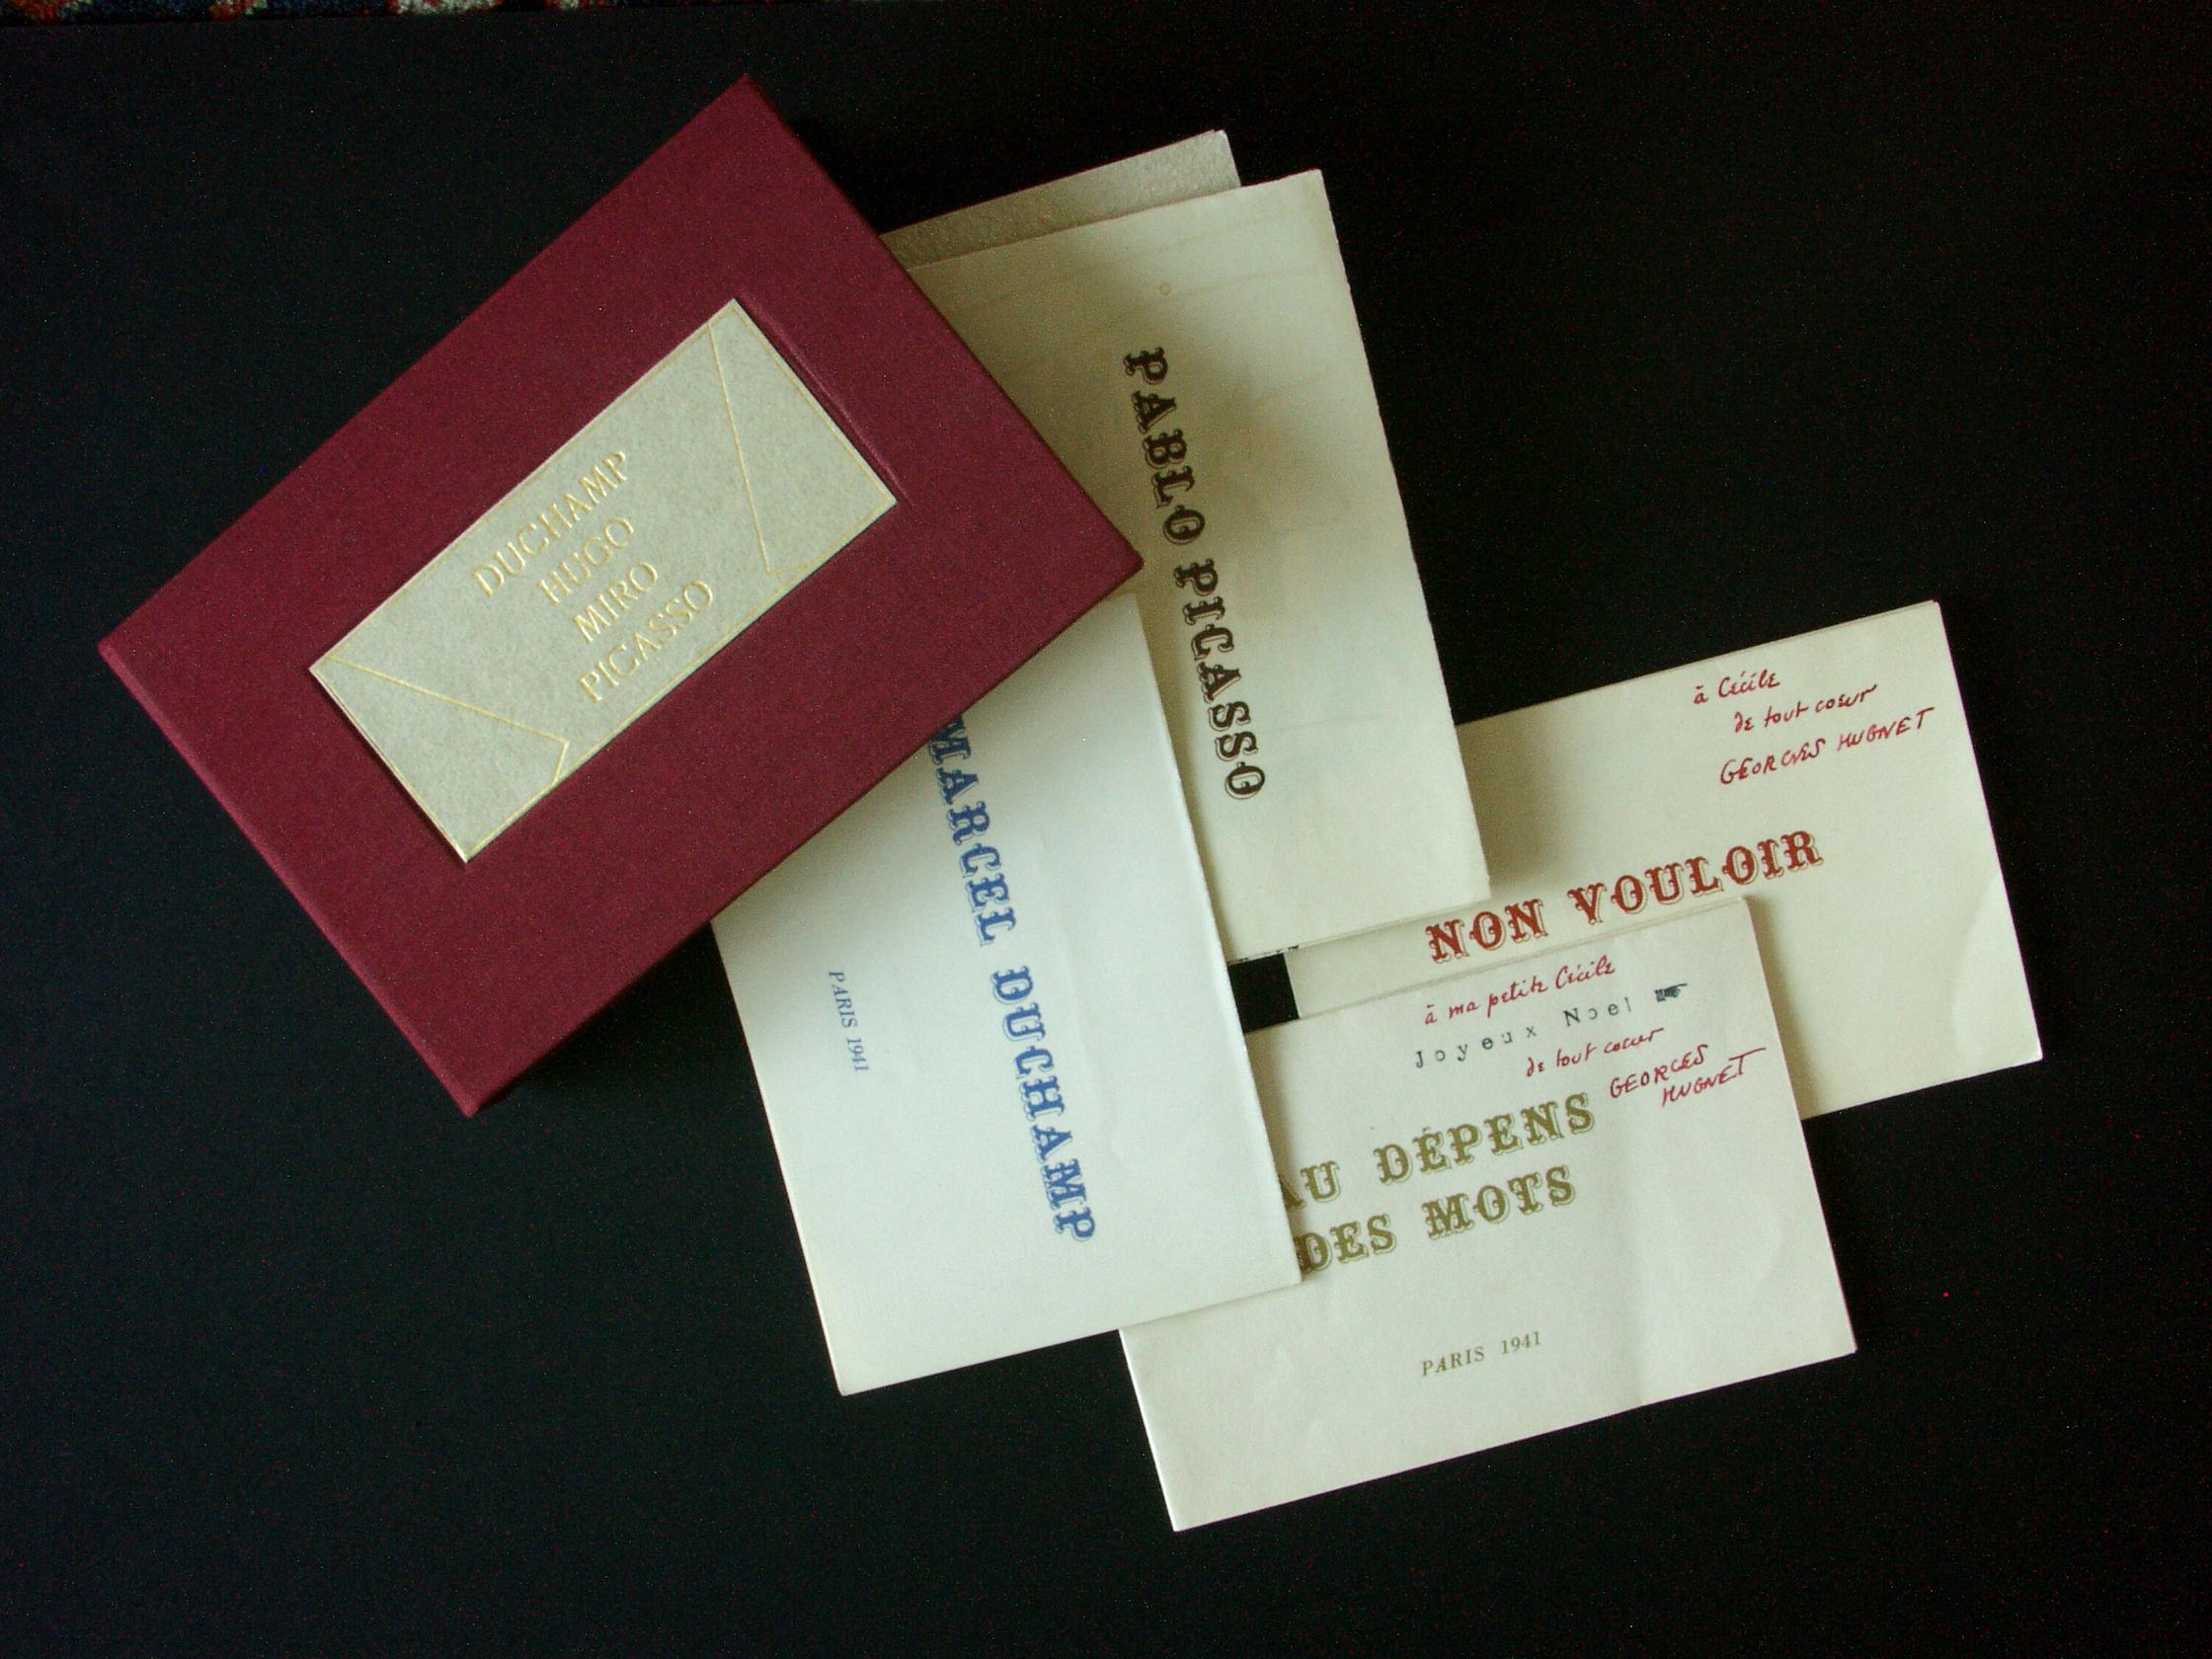 HUGNET, Georges. Complete set of 4 pamphlets. See Description. - Print by Georges Hugnet